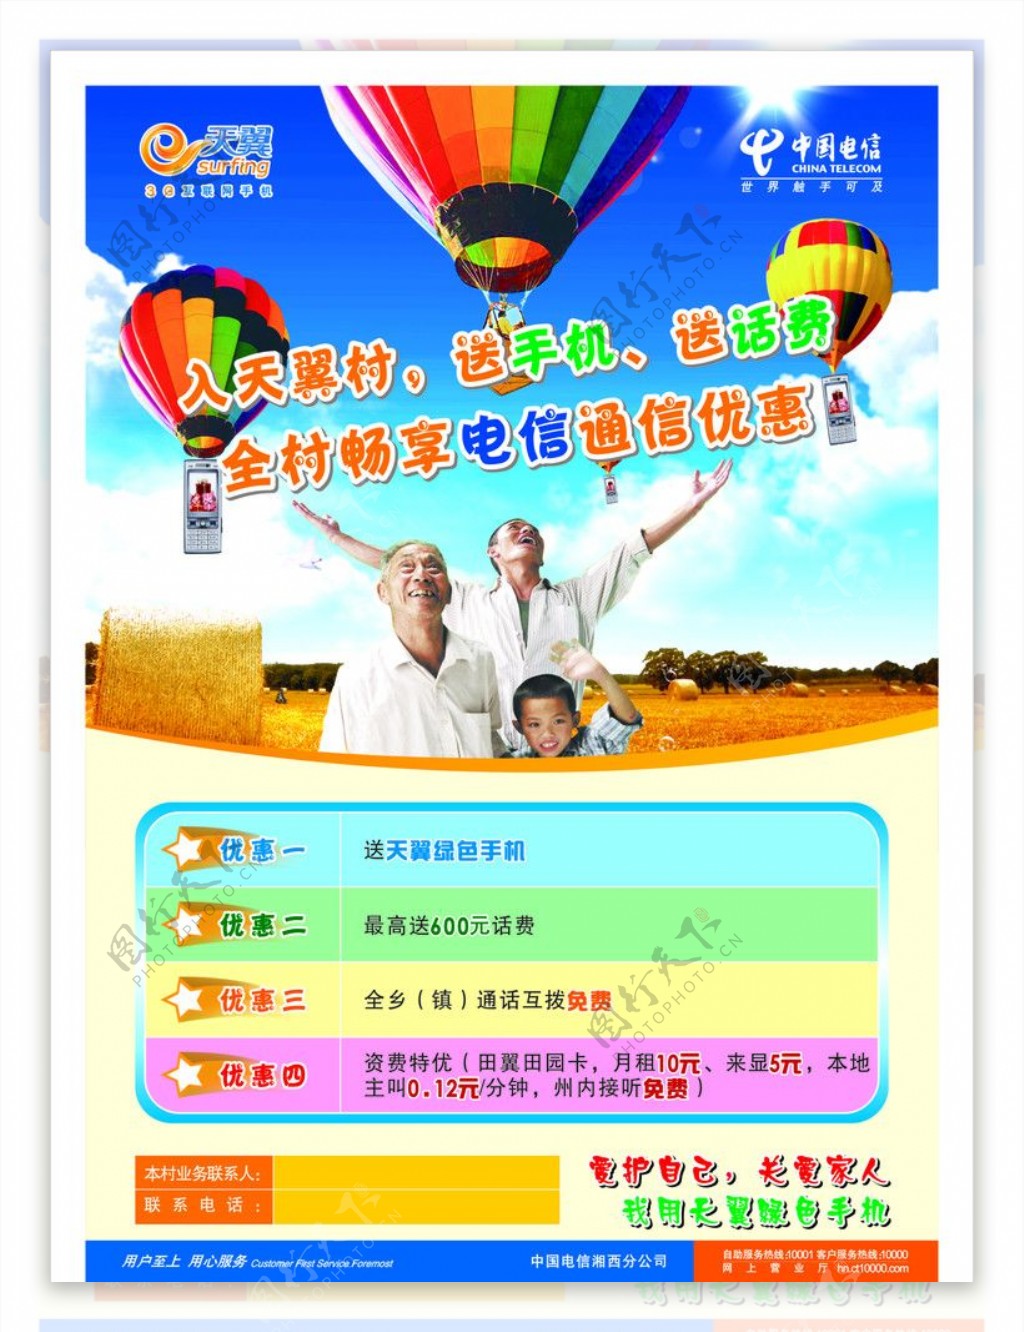 电信天翼村电信天翼LOGO活动气球手机礼品优惠海报宣传图片